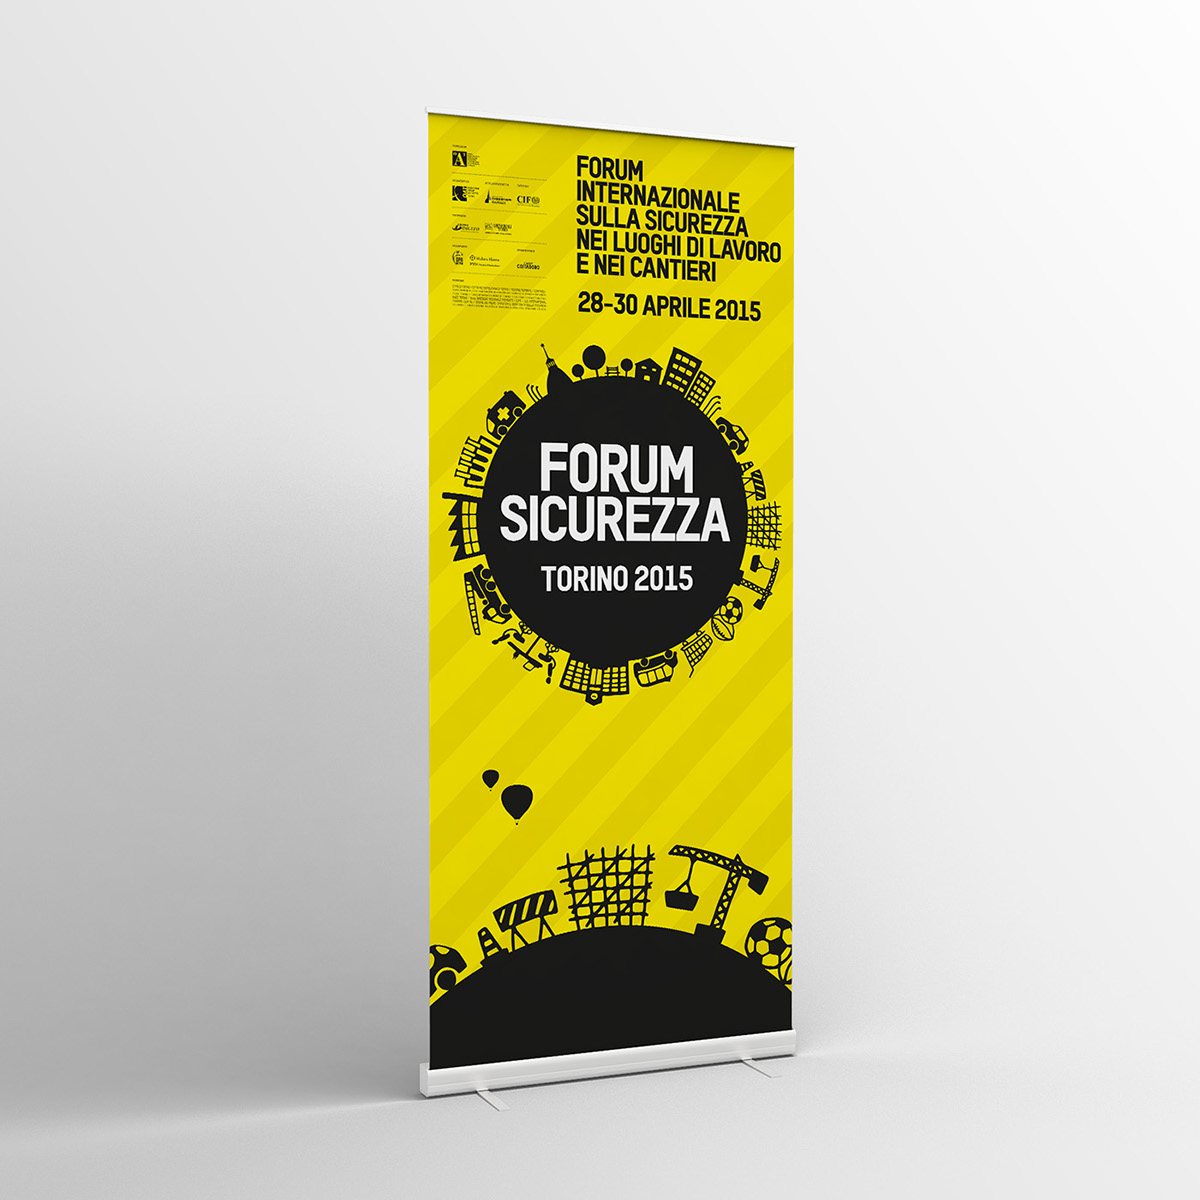 Forum Sicurezza Torino lorem Fabio Sorano Fondazione per l'architettura/Torino Ordine Architetti Torino